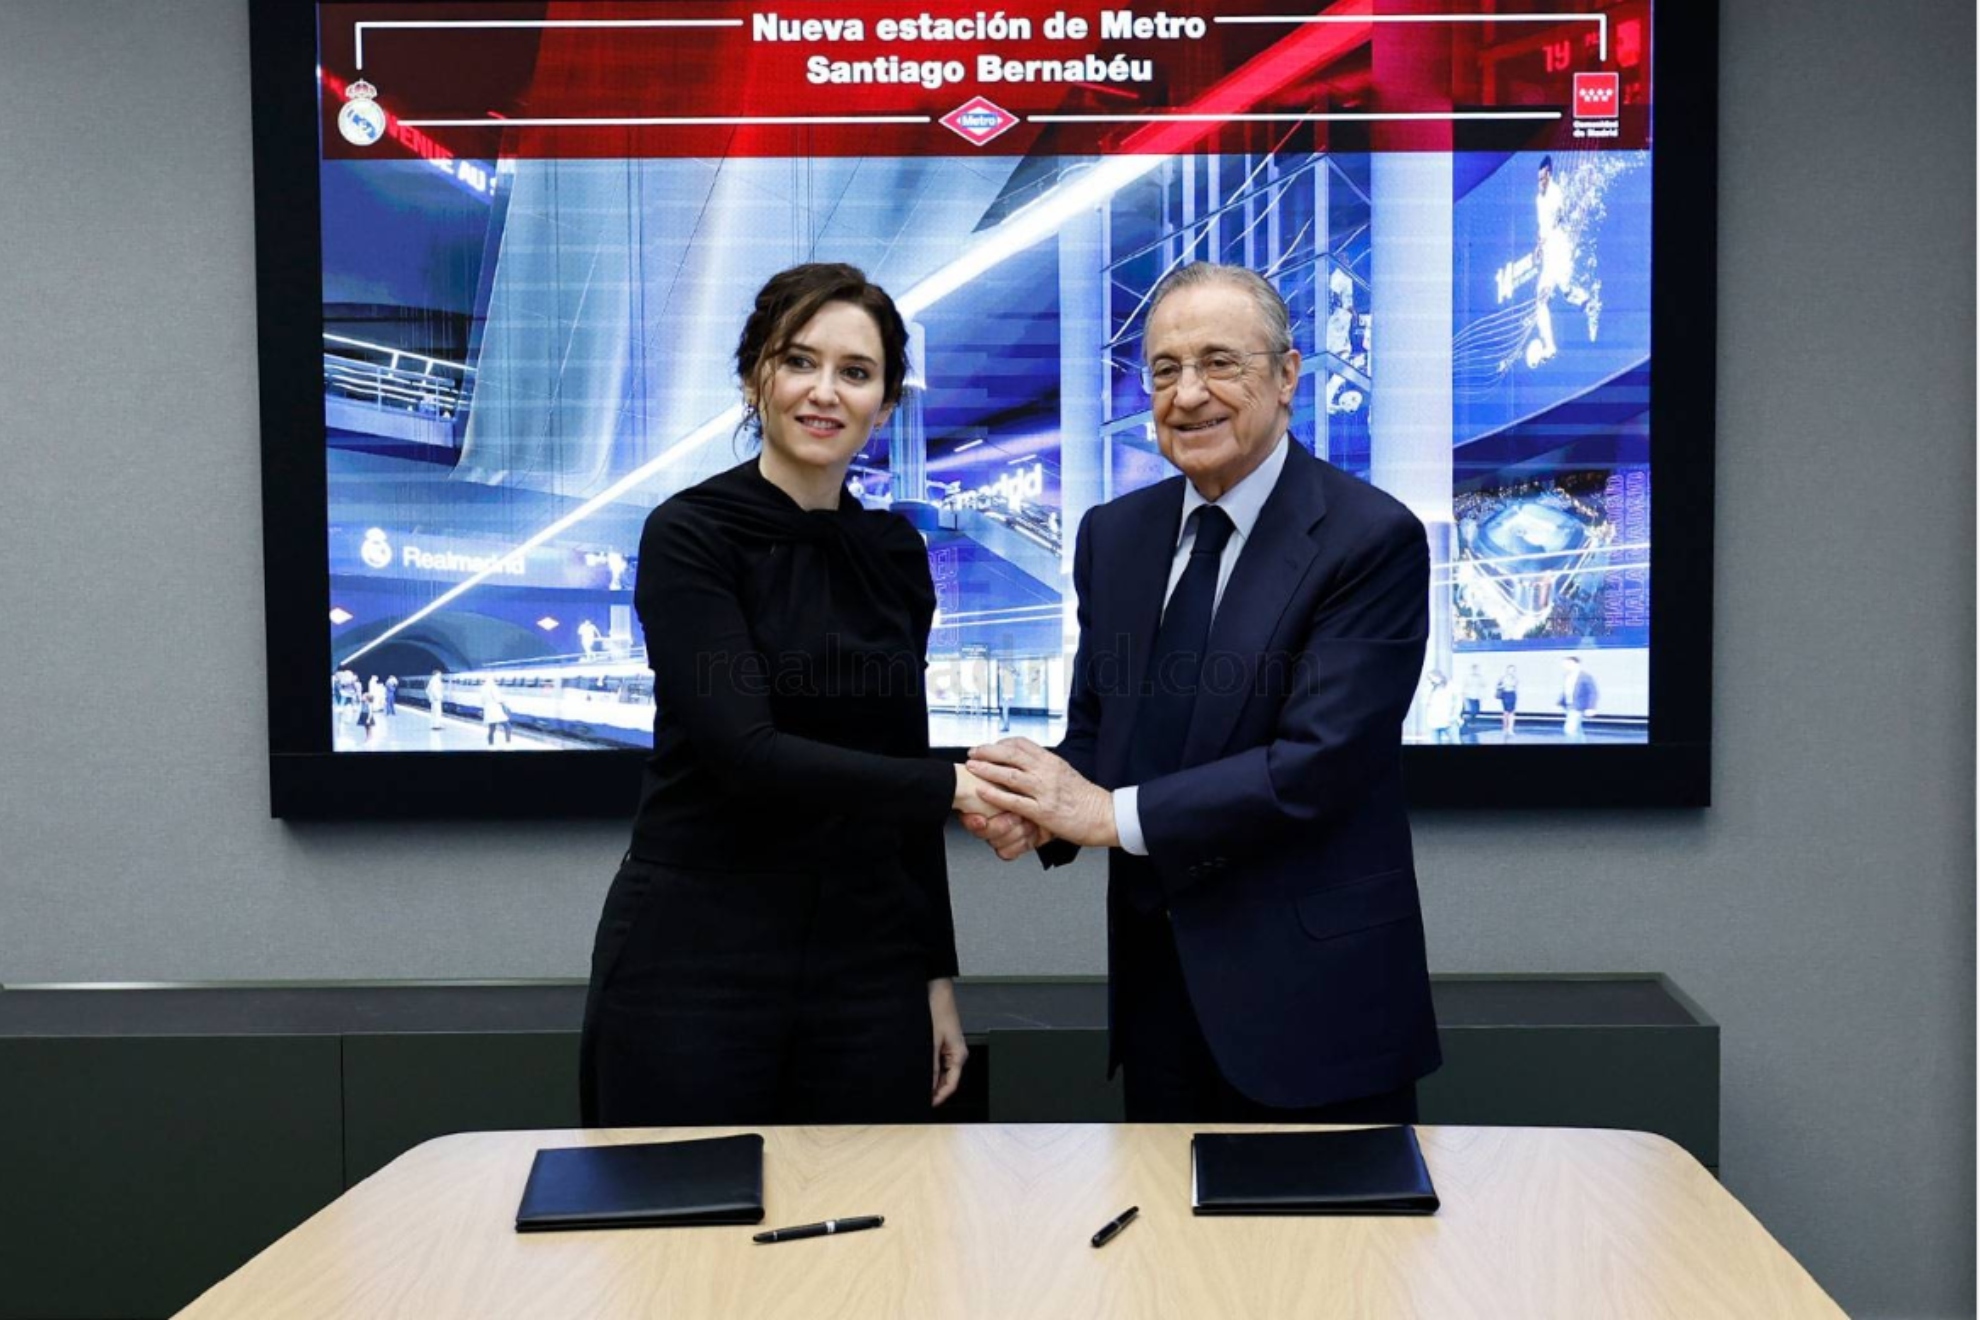 Acuerdo de colaboración para la nueva estación de Metro Santiago Bernabéu